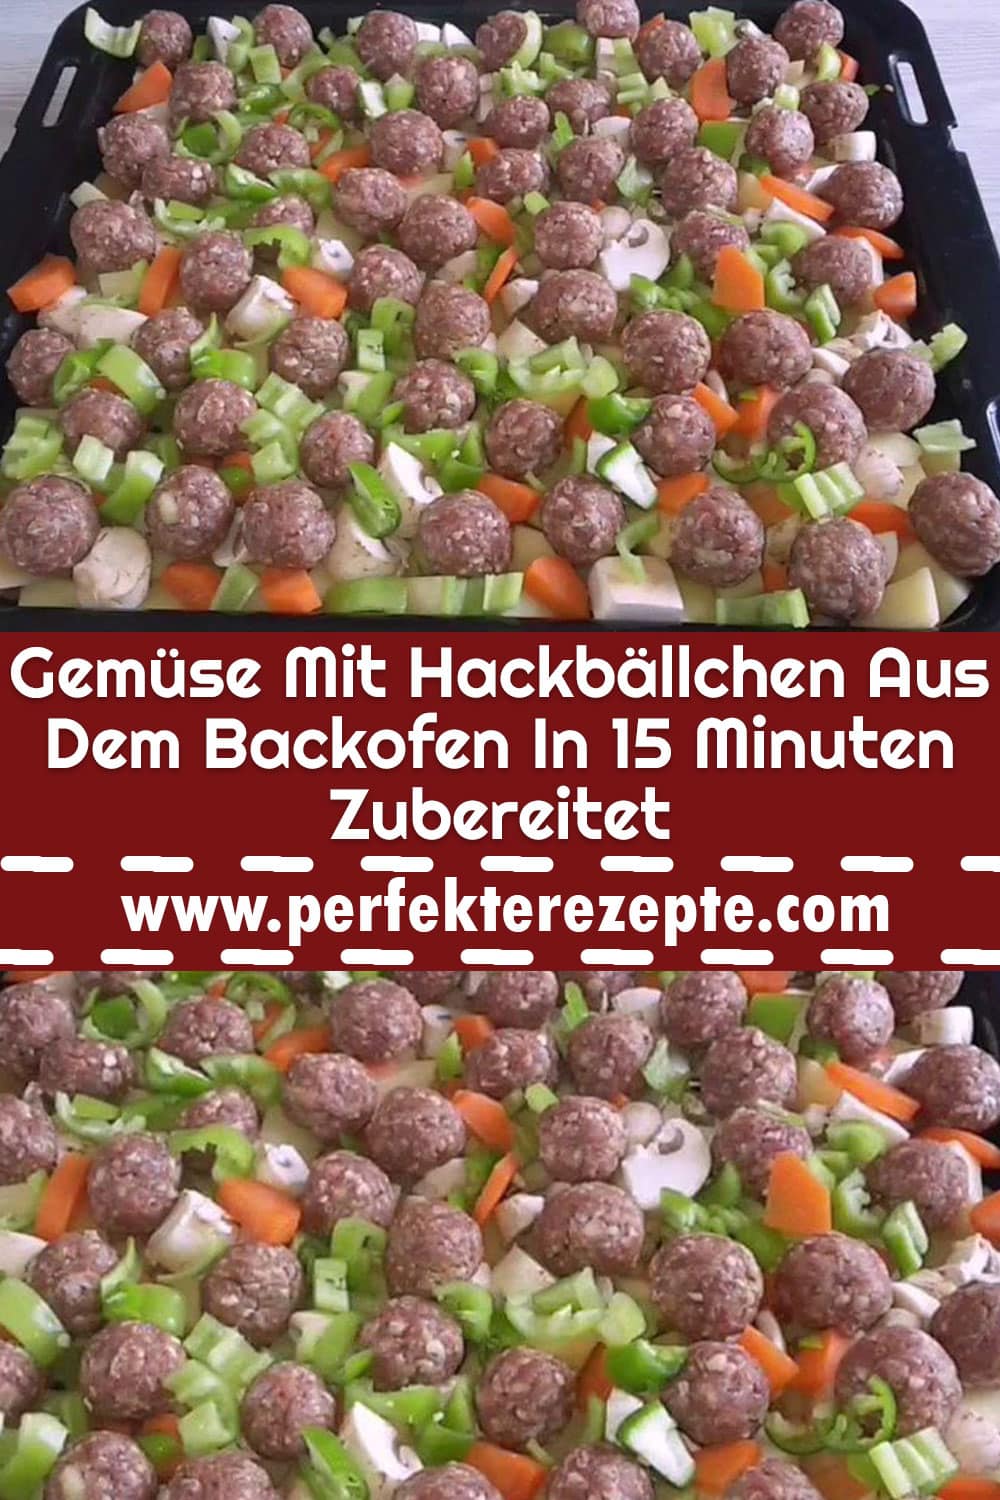 Gemüse Mit Hackbällchen Aus Dem Backofen In 15 Minuten Zubereitet !